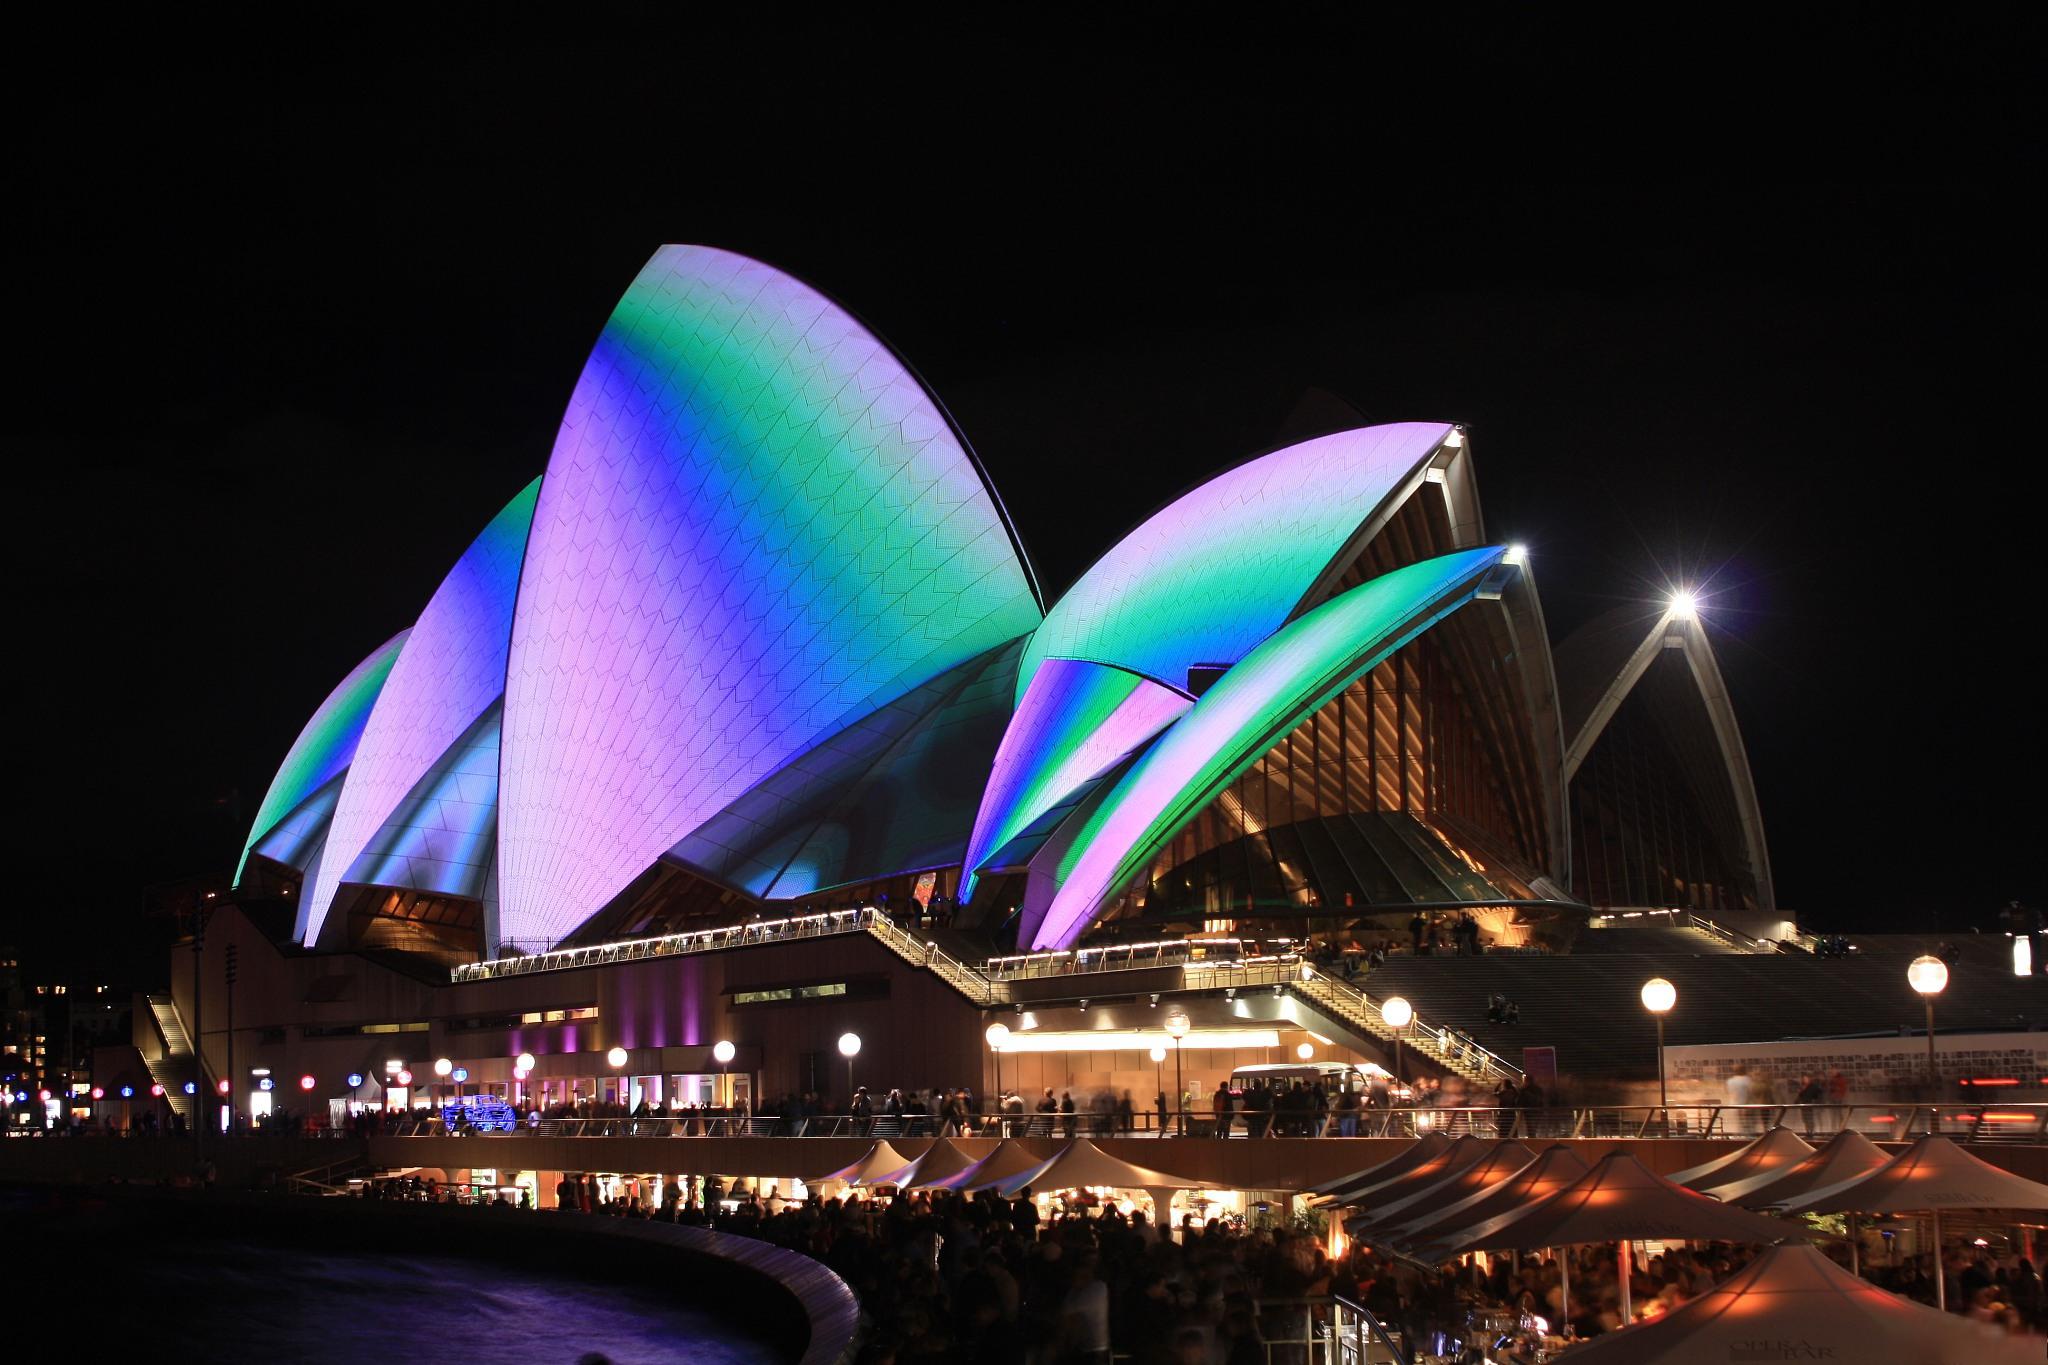 澳洲旅行的必去景点 悉尼歌剧院无疑是澳大利亚最具代表性的建筑之一